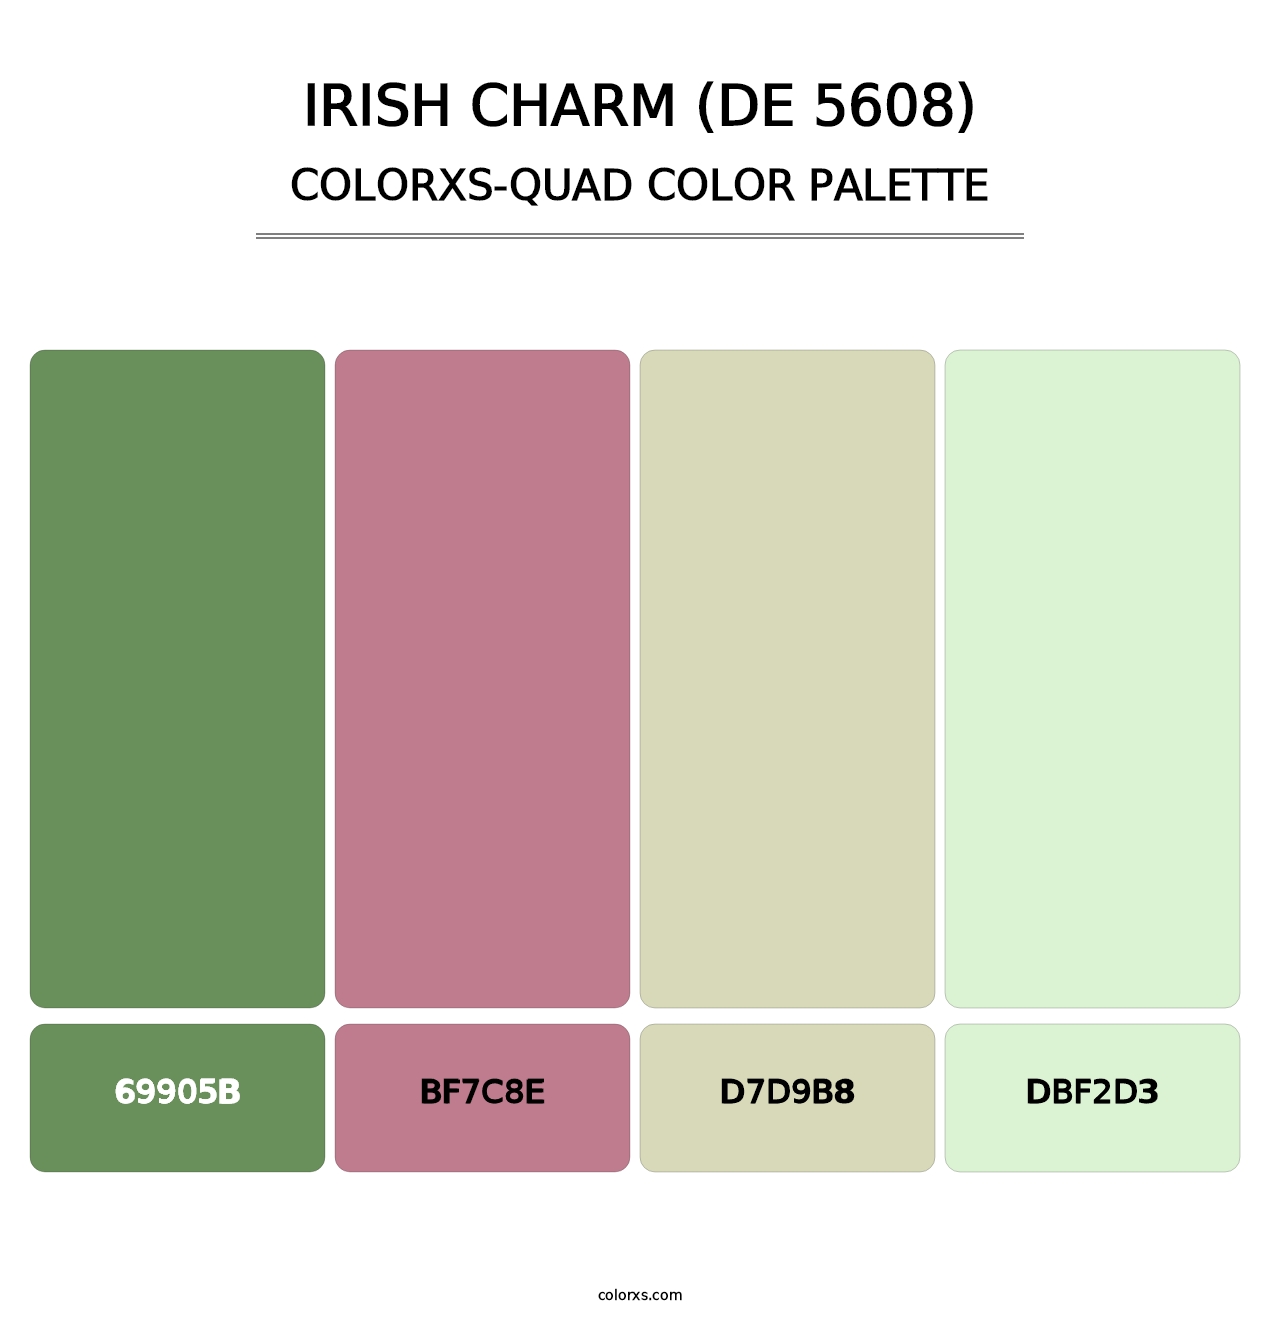 Irish Charm (DE 5608) - Colorxs Quad Palette